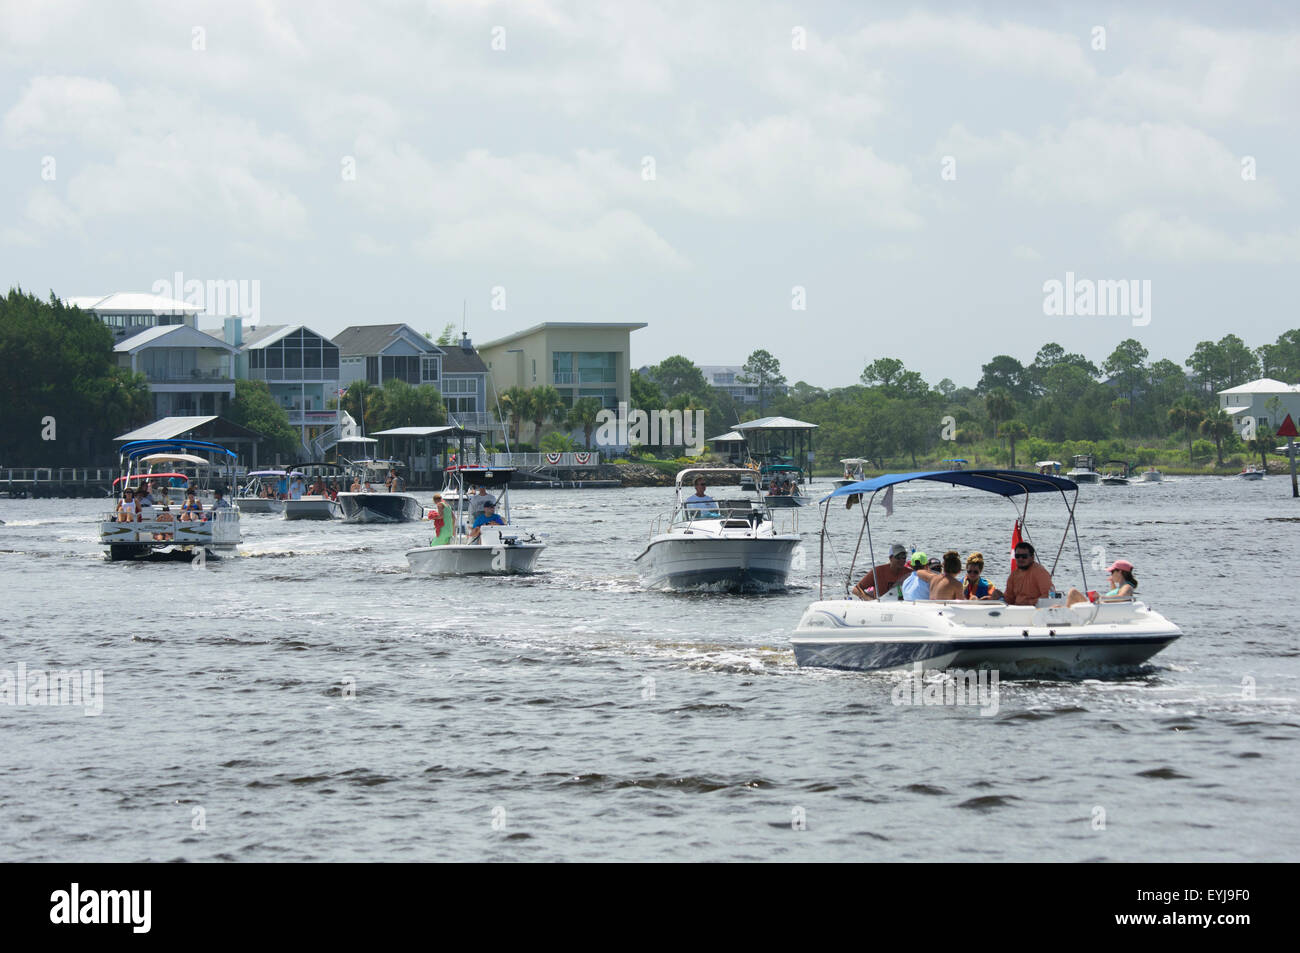 Recreational boat traffic on Steinhatchee River, Steimnhatchee, FL Stock Photo